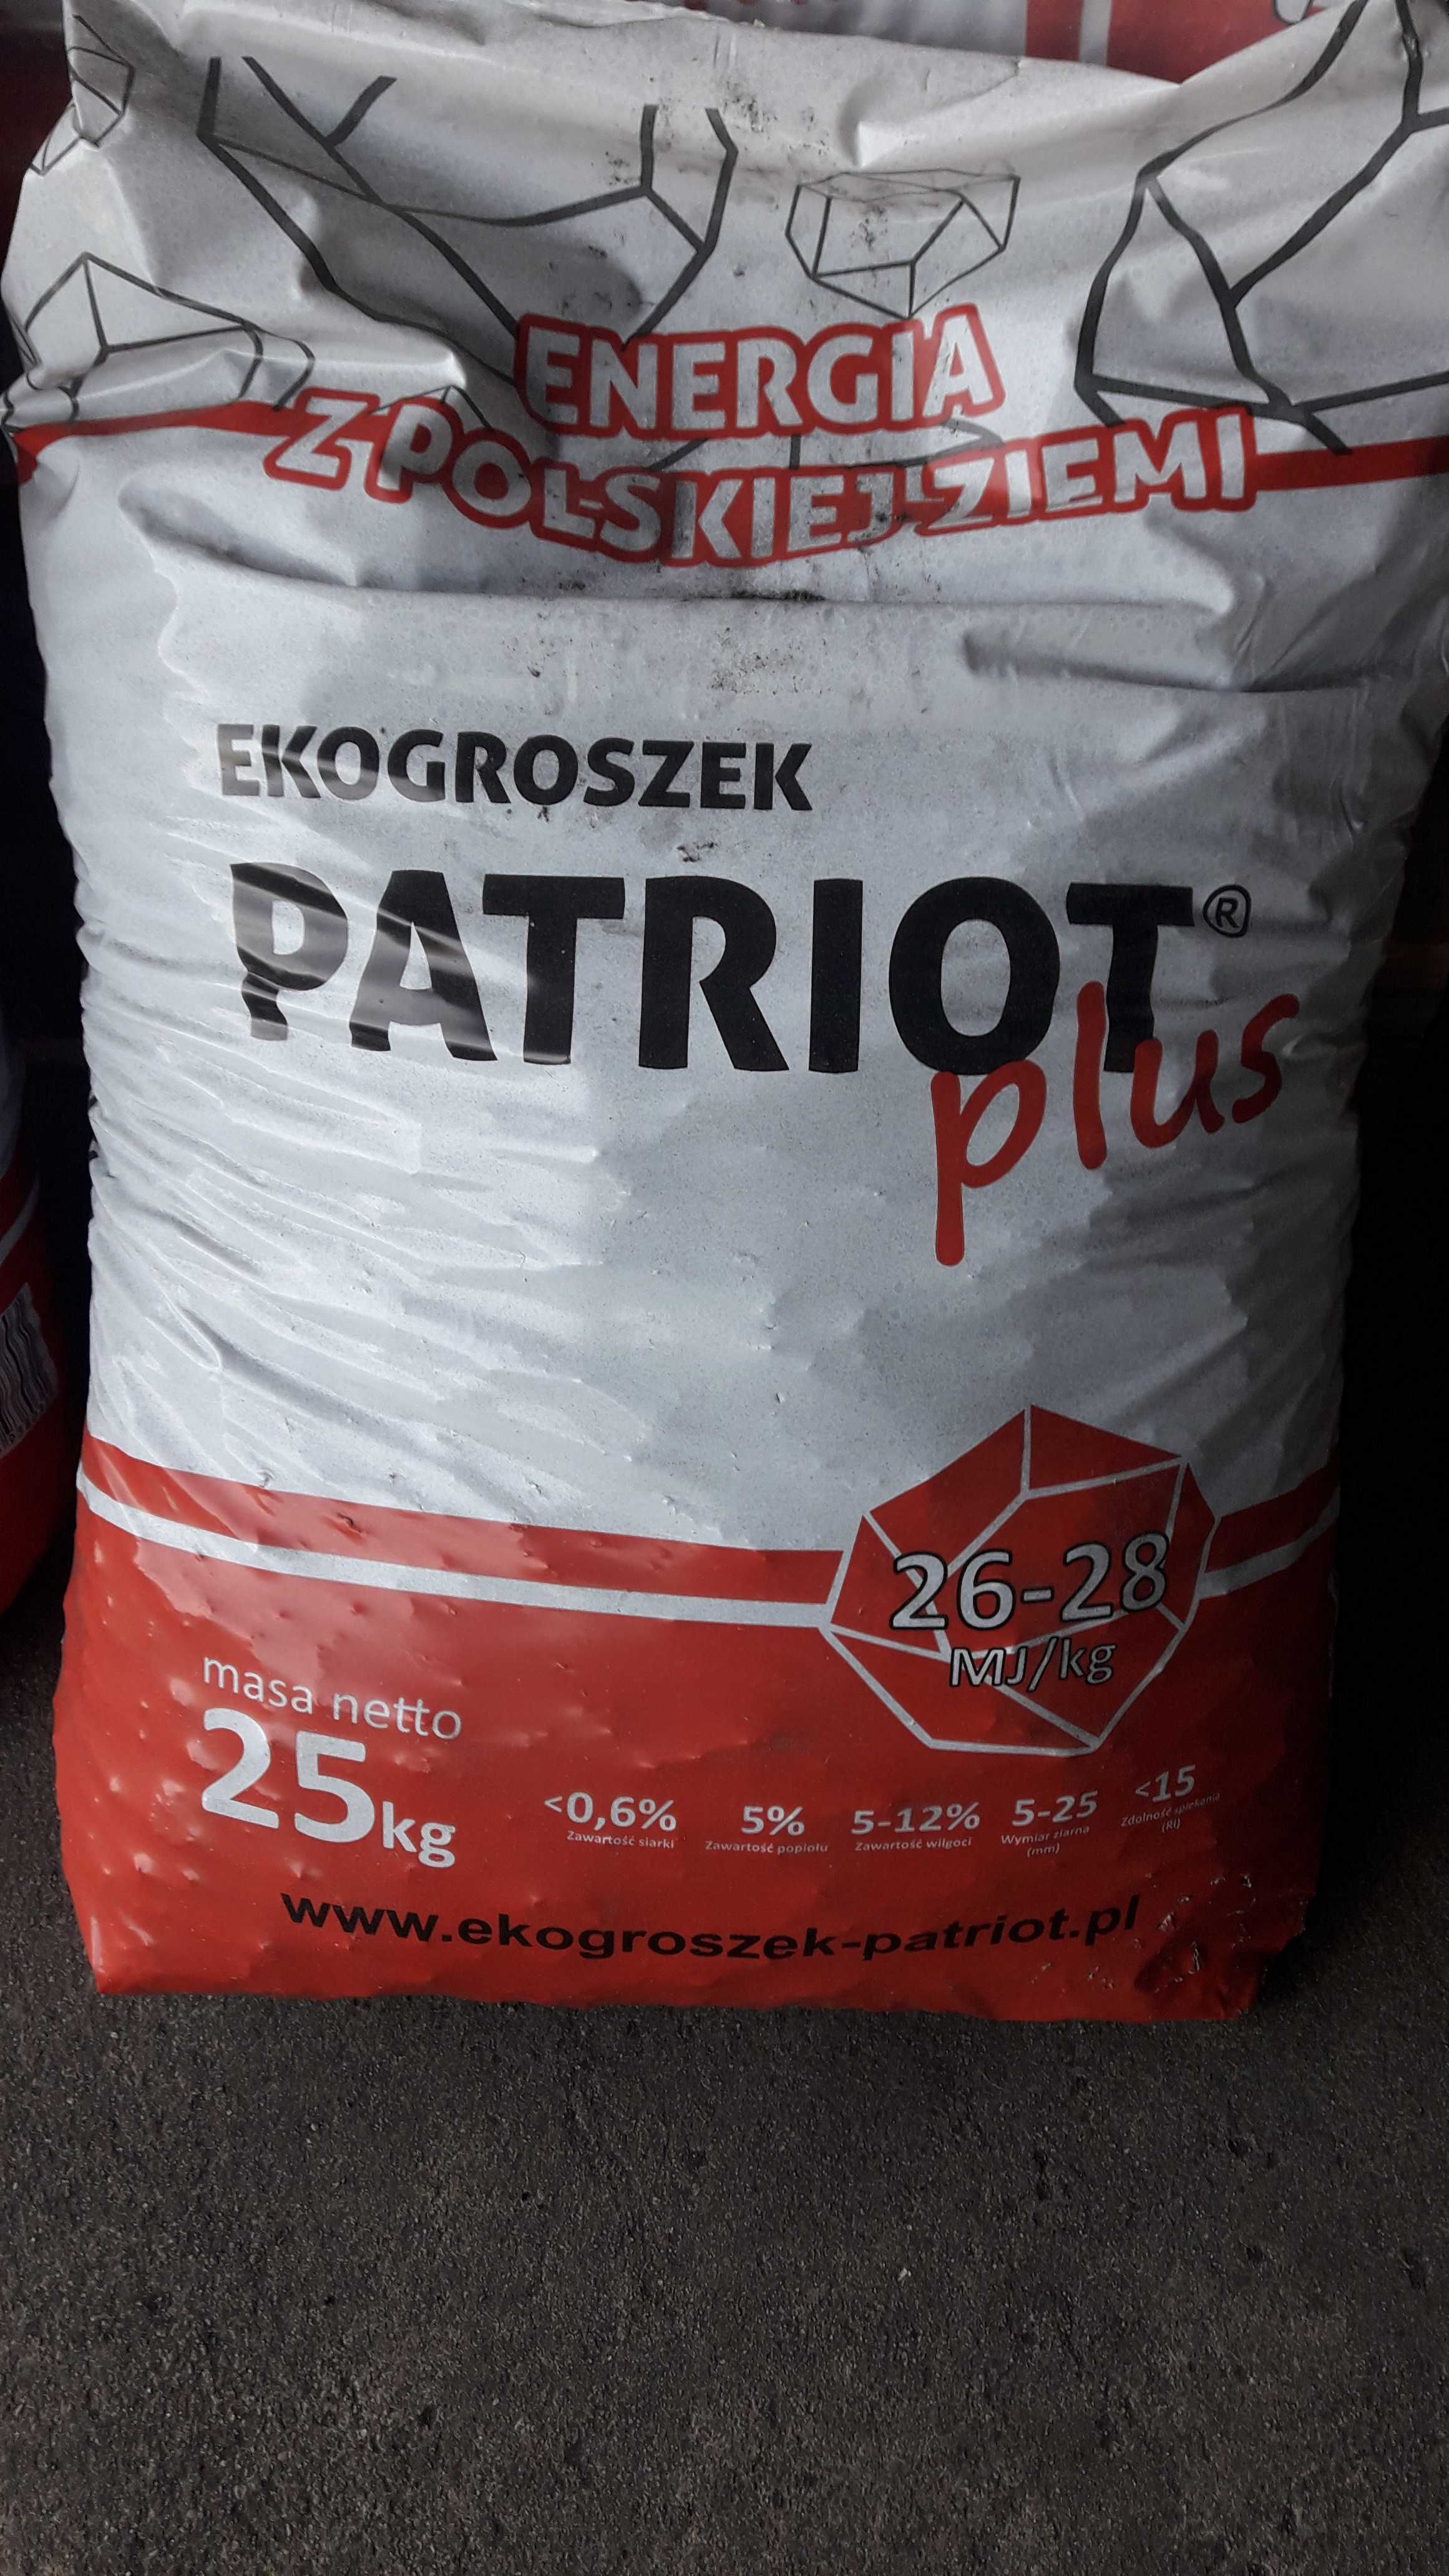 Ekogroszek Patriot Plus 26-28MJ Wałcz Mirosławiec Tuczno Trzcianka